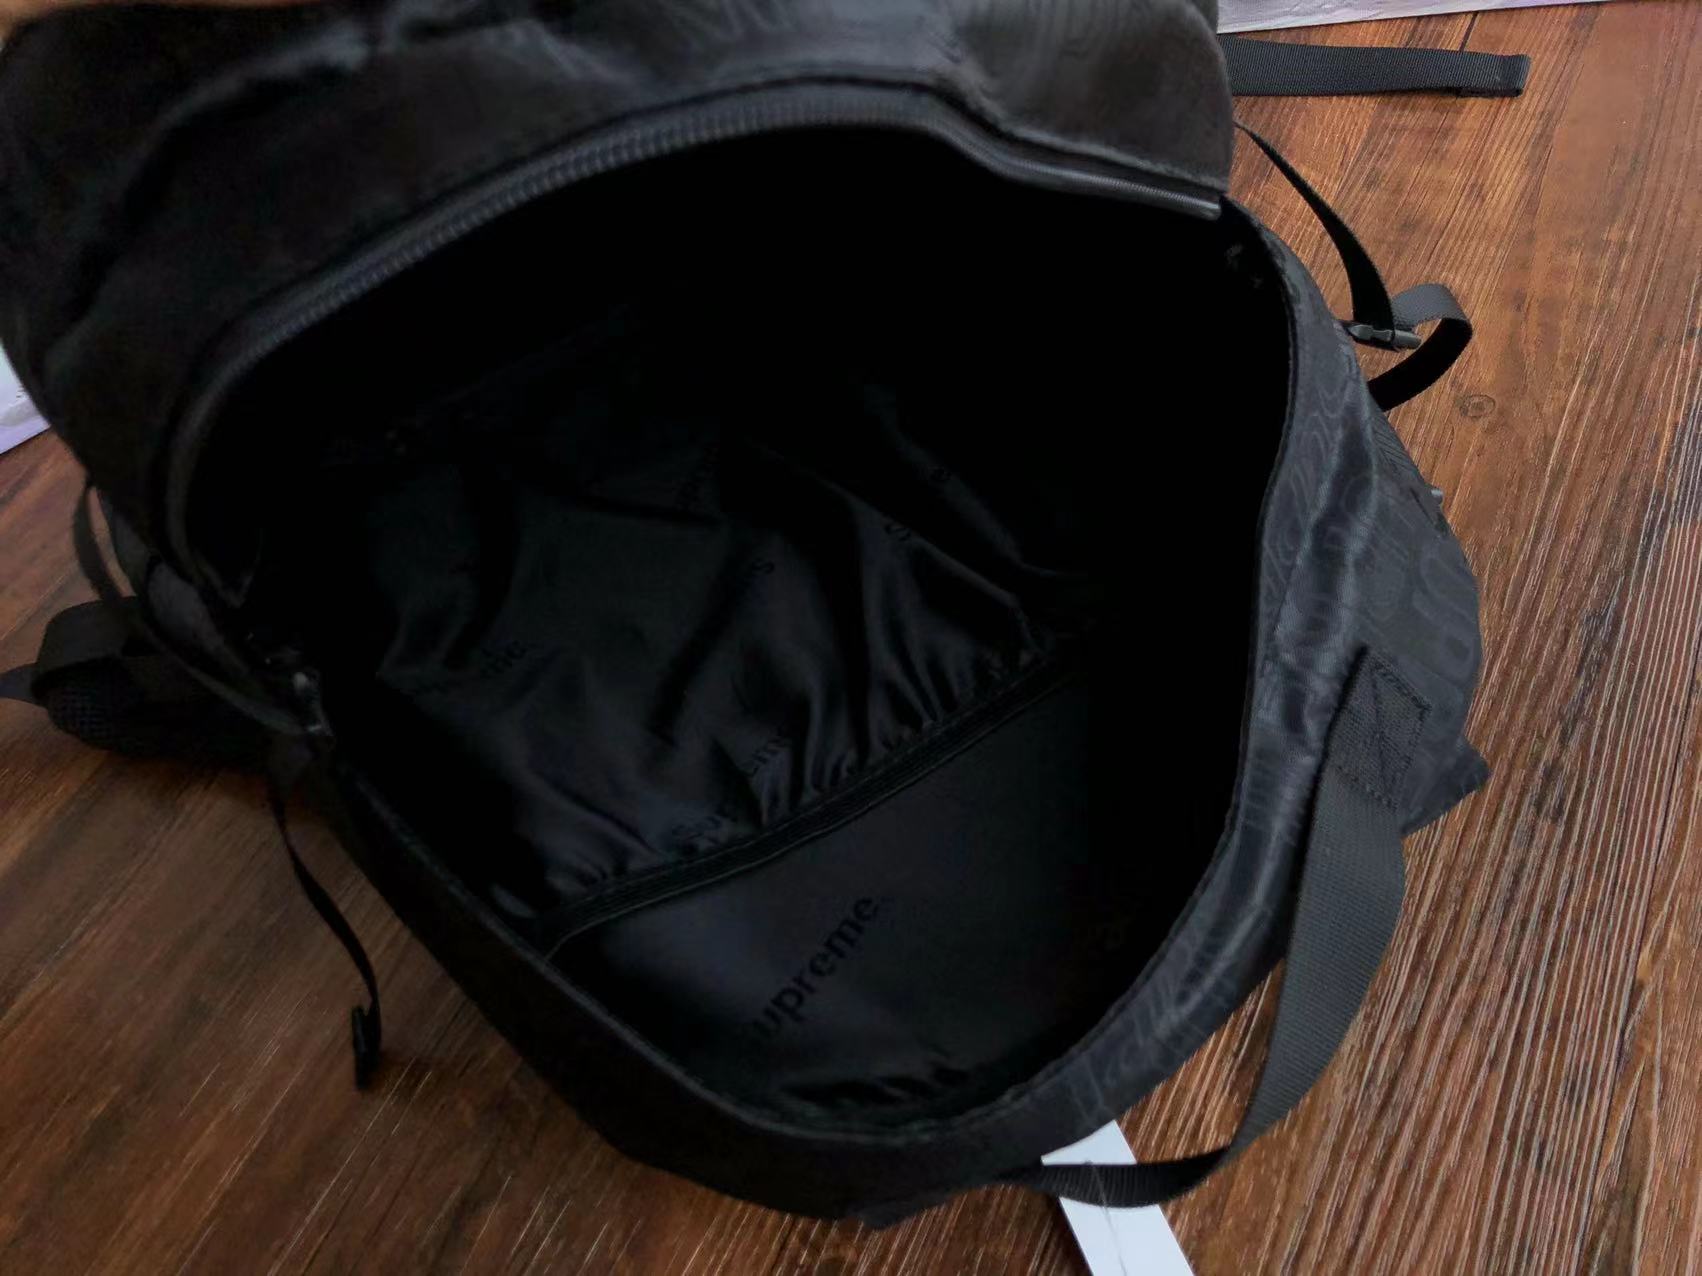 Supreme Backpack SS19 Black